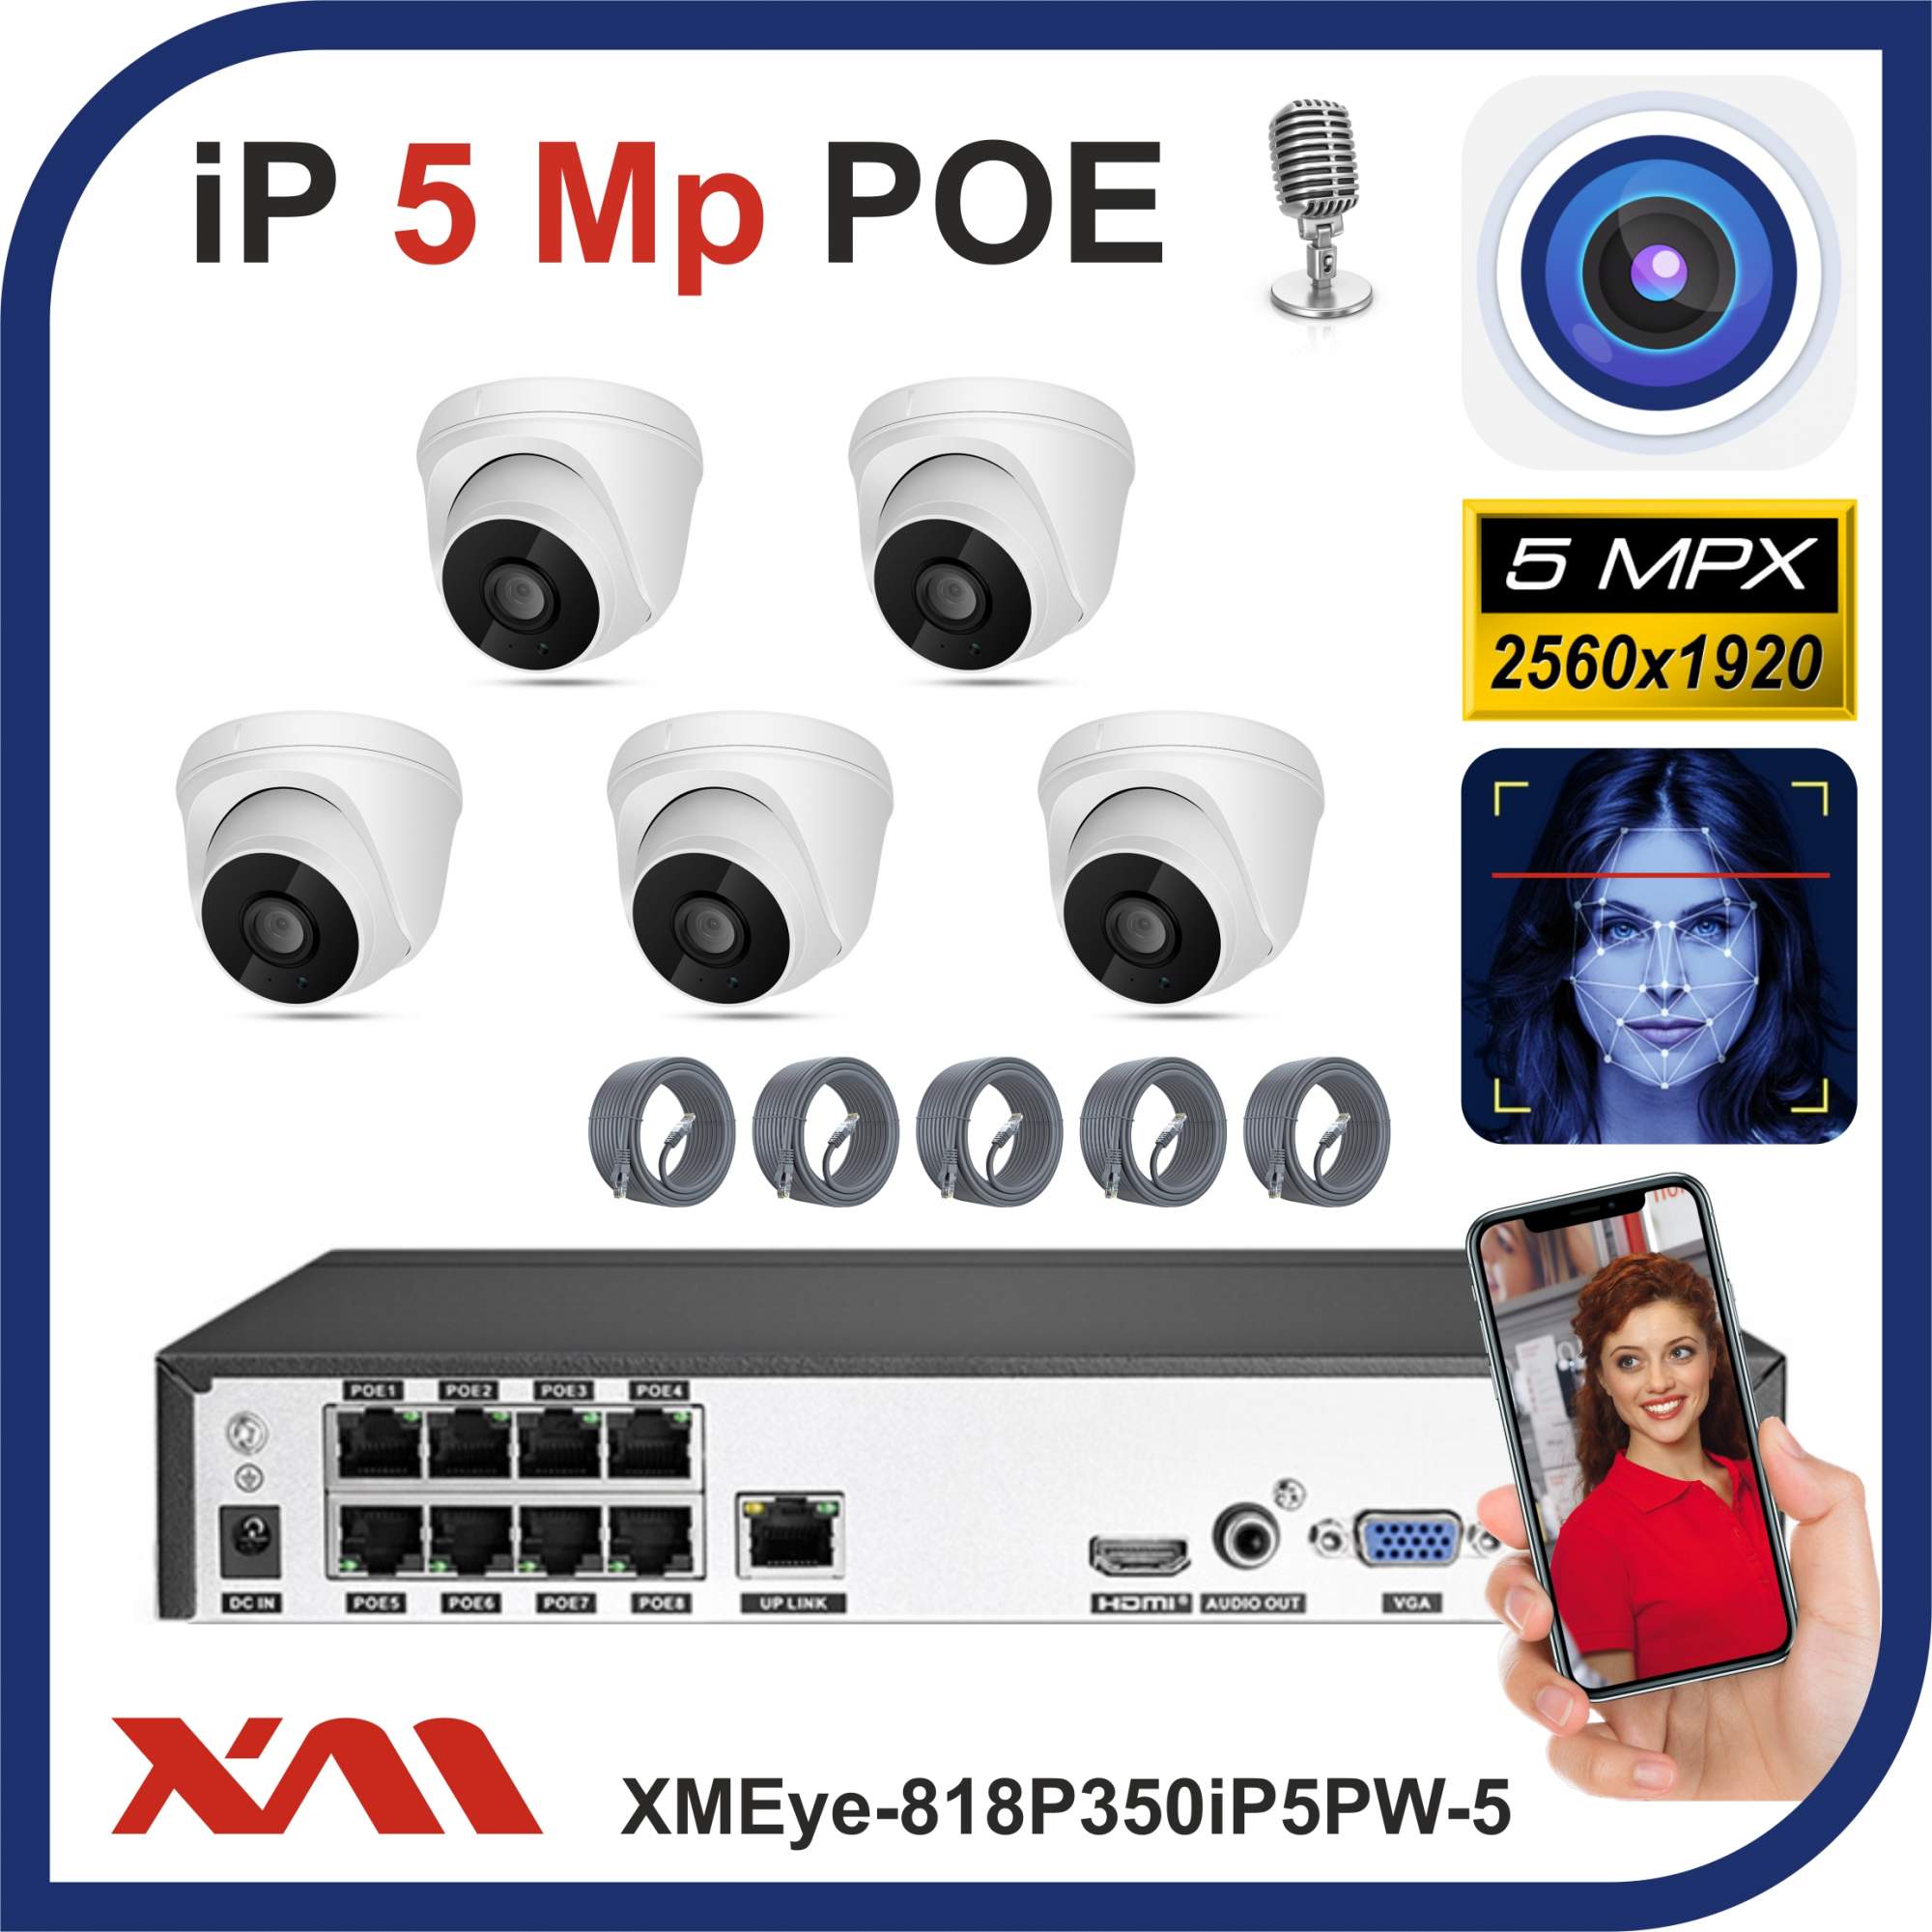 Комплект видеонаблюдения IP POE Xmeye-818P350iP5 на 5 камер с микрофонами, 5 Мегапикселей